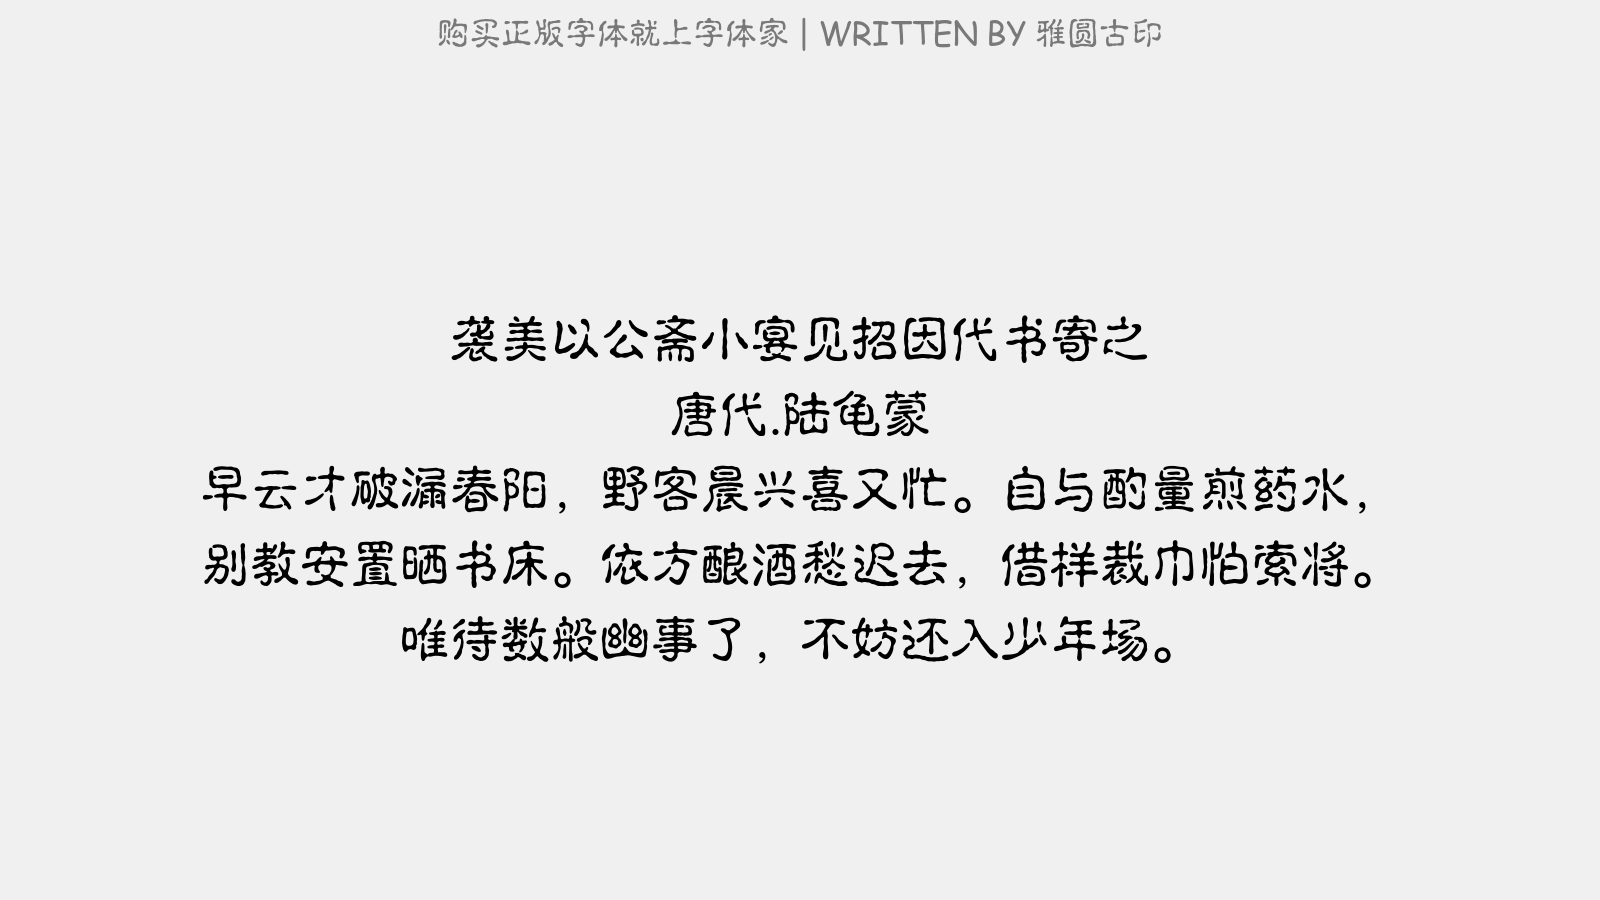 雅圆古印免费字体下载 中文字体免费下载尽在字体家